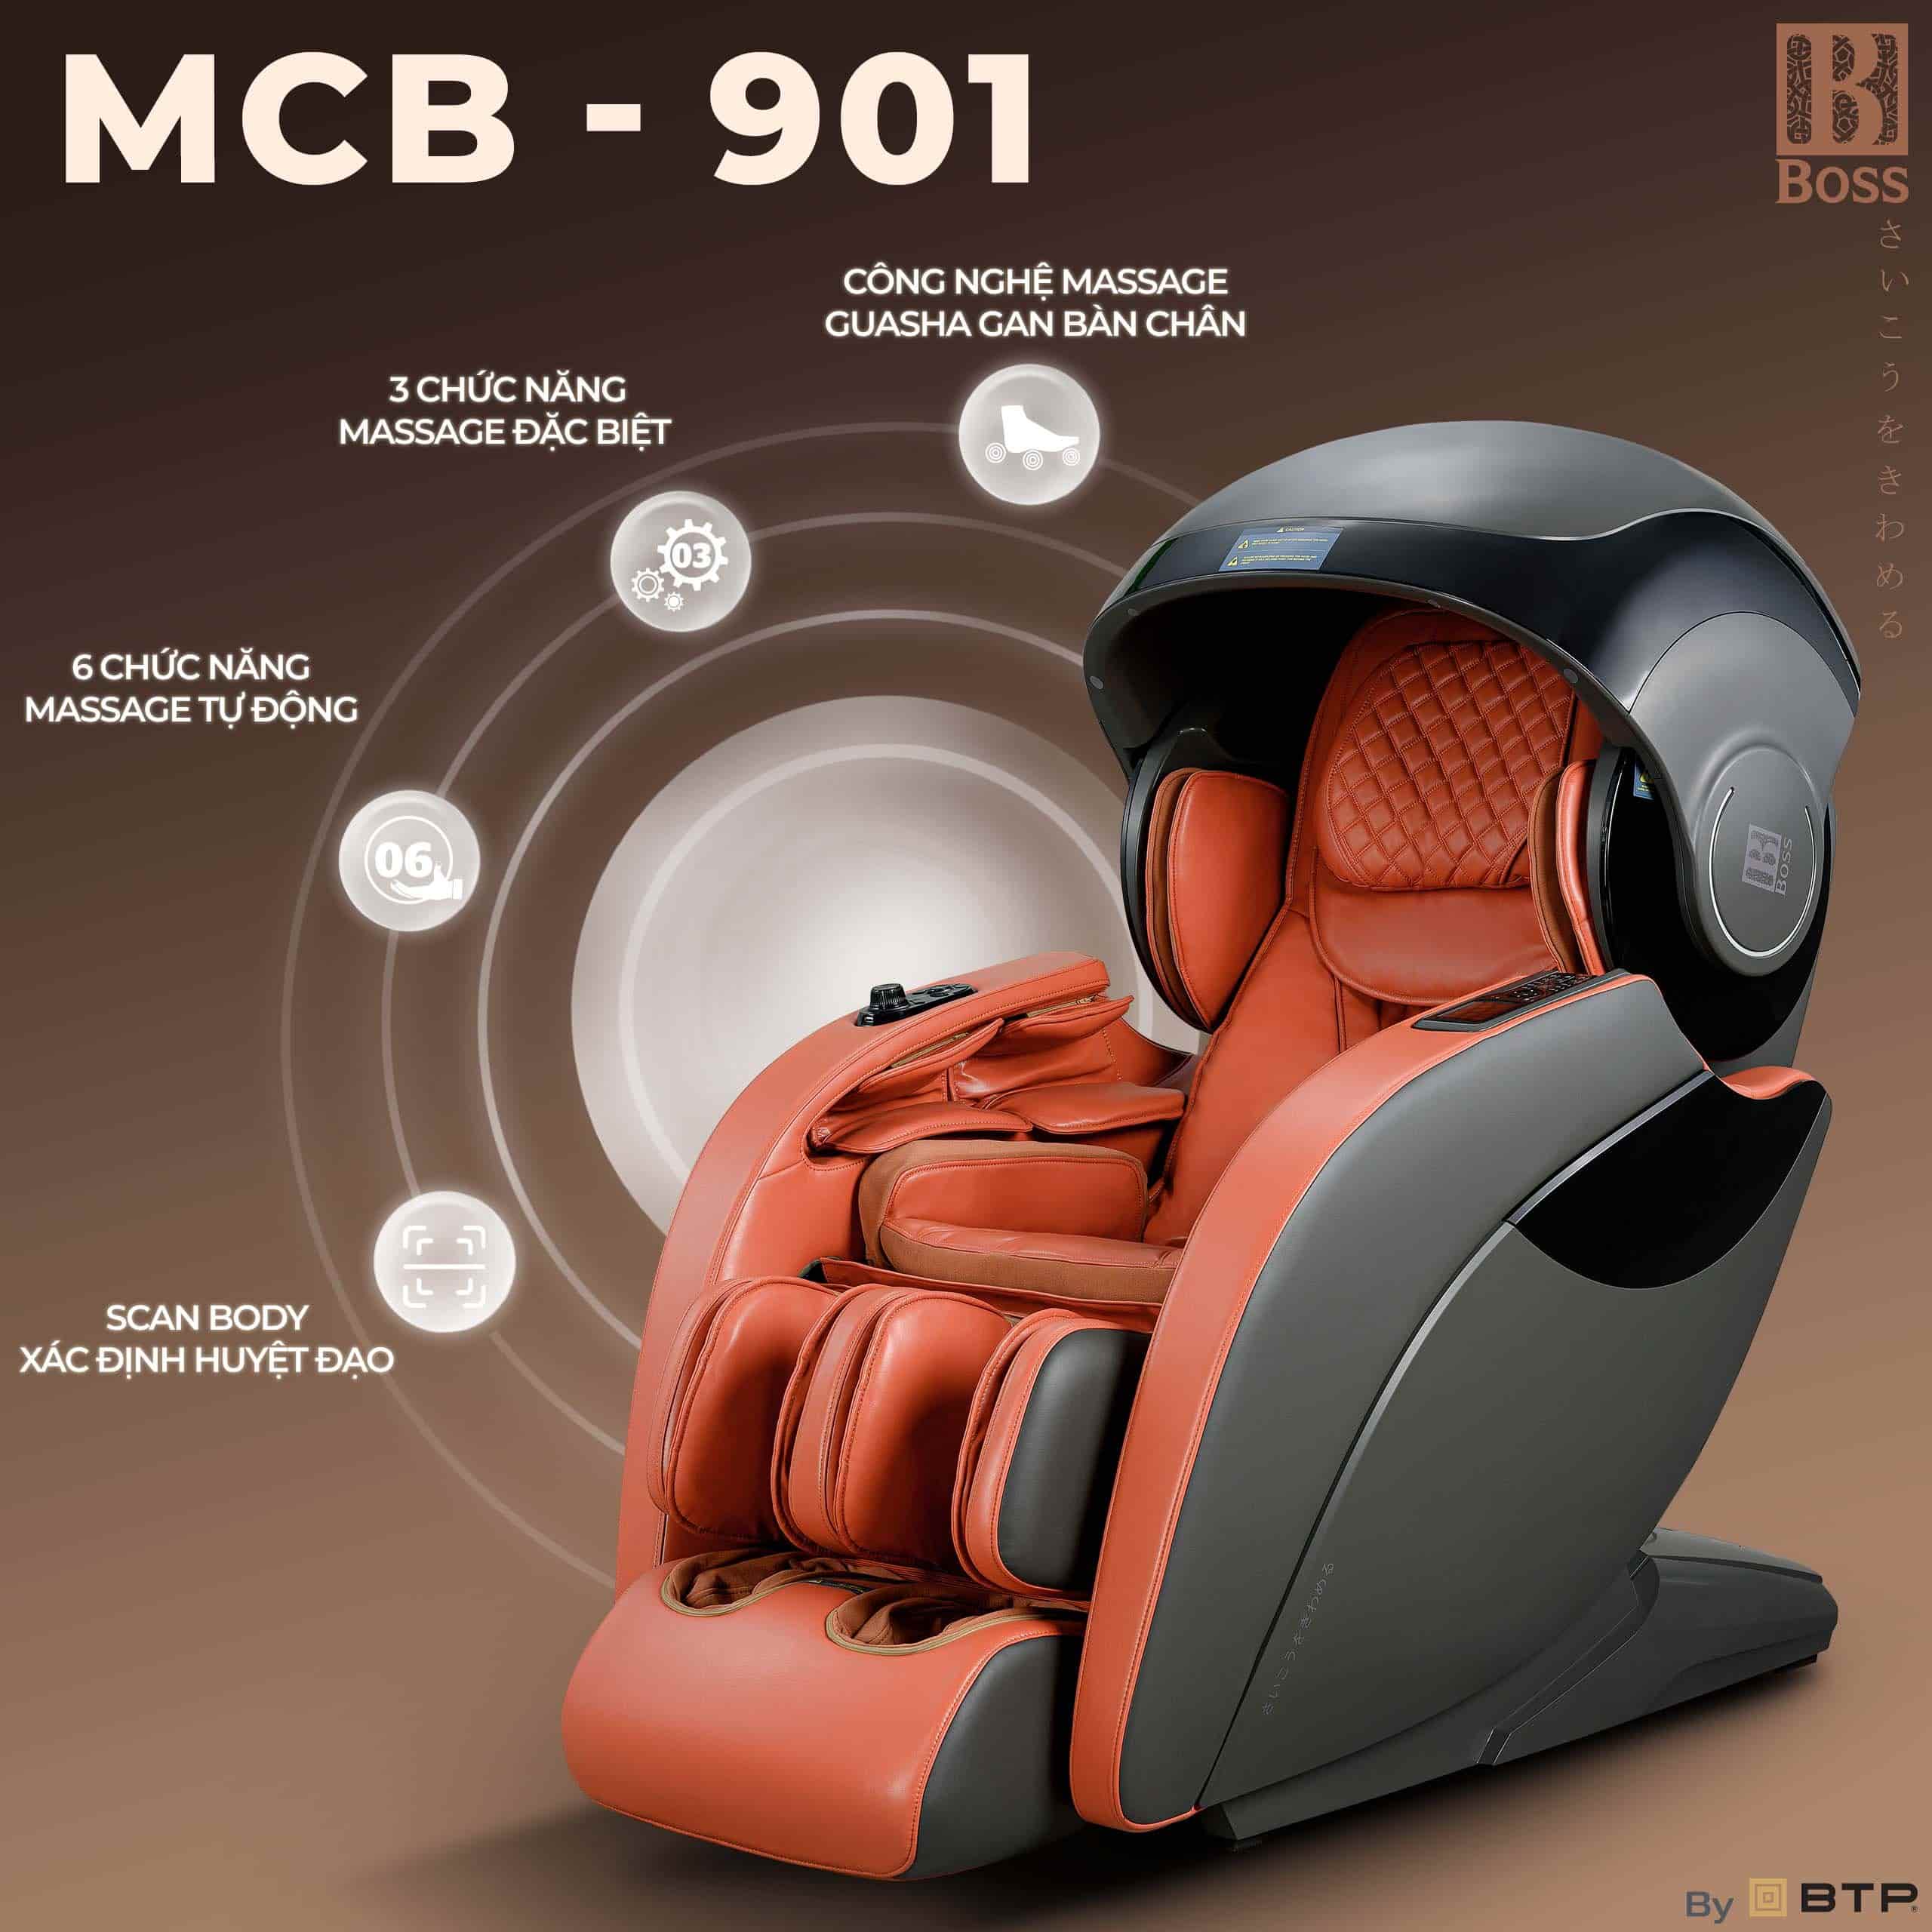 ghế massage Boss MCB-901 được coi là một bước đột phá trong ngành công nghệ massage